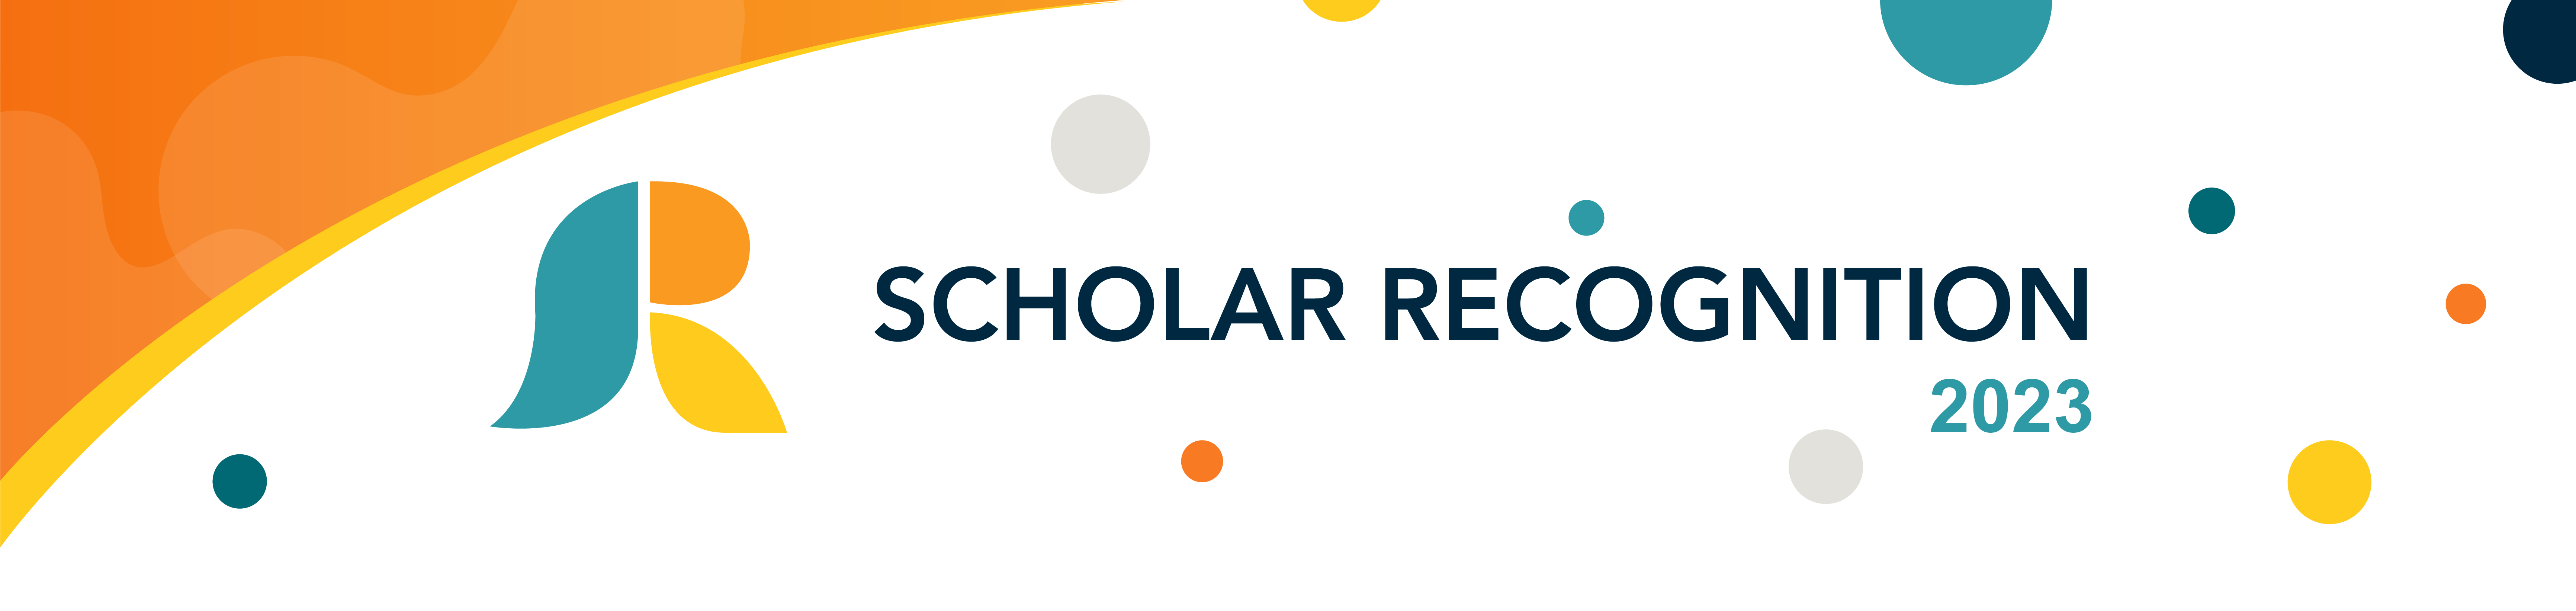 2023 Scholar Recognition